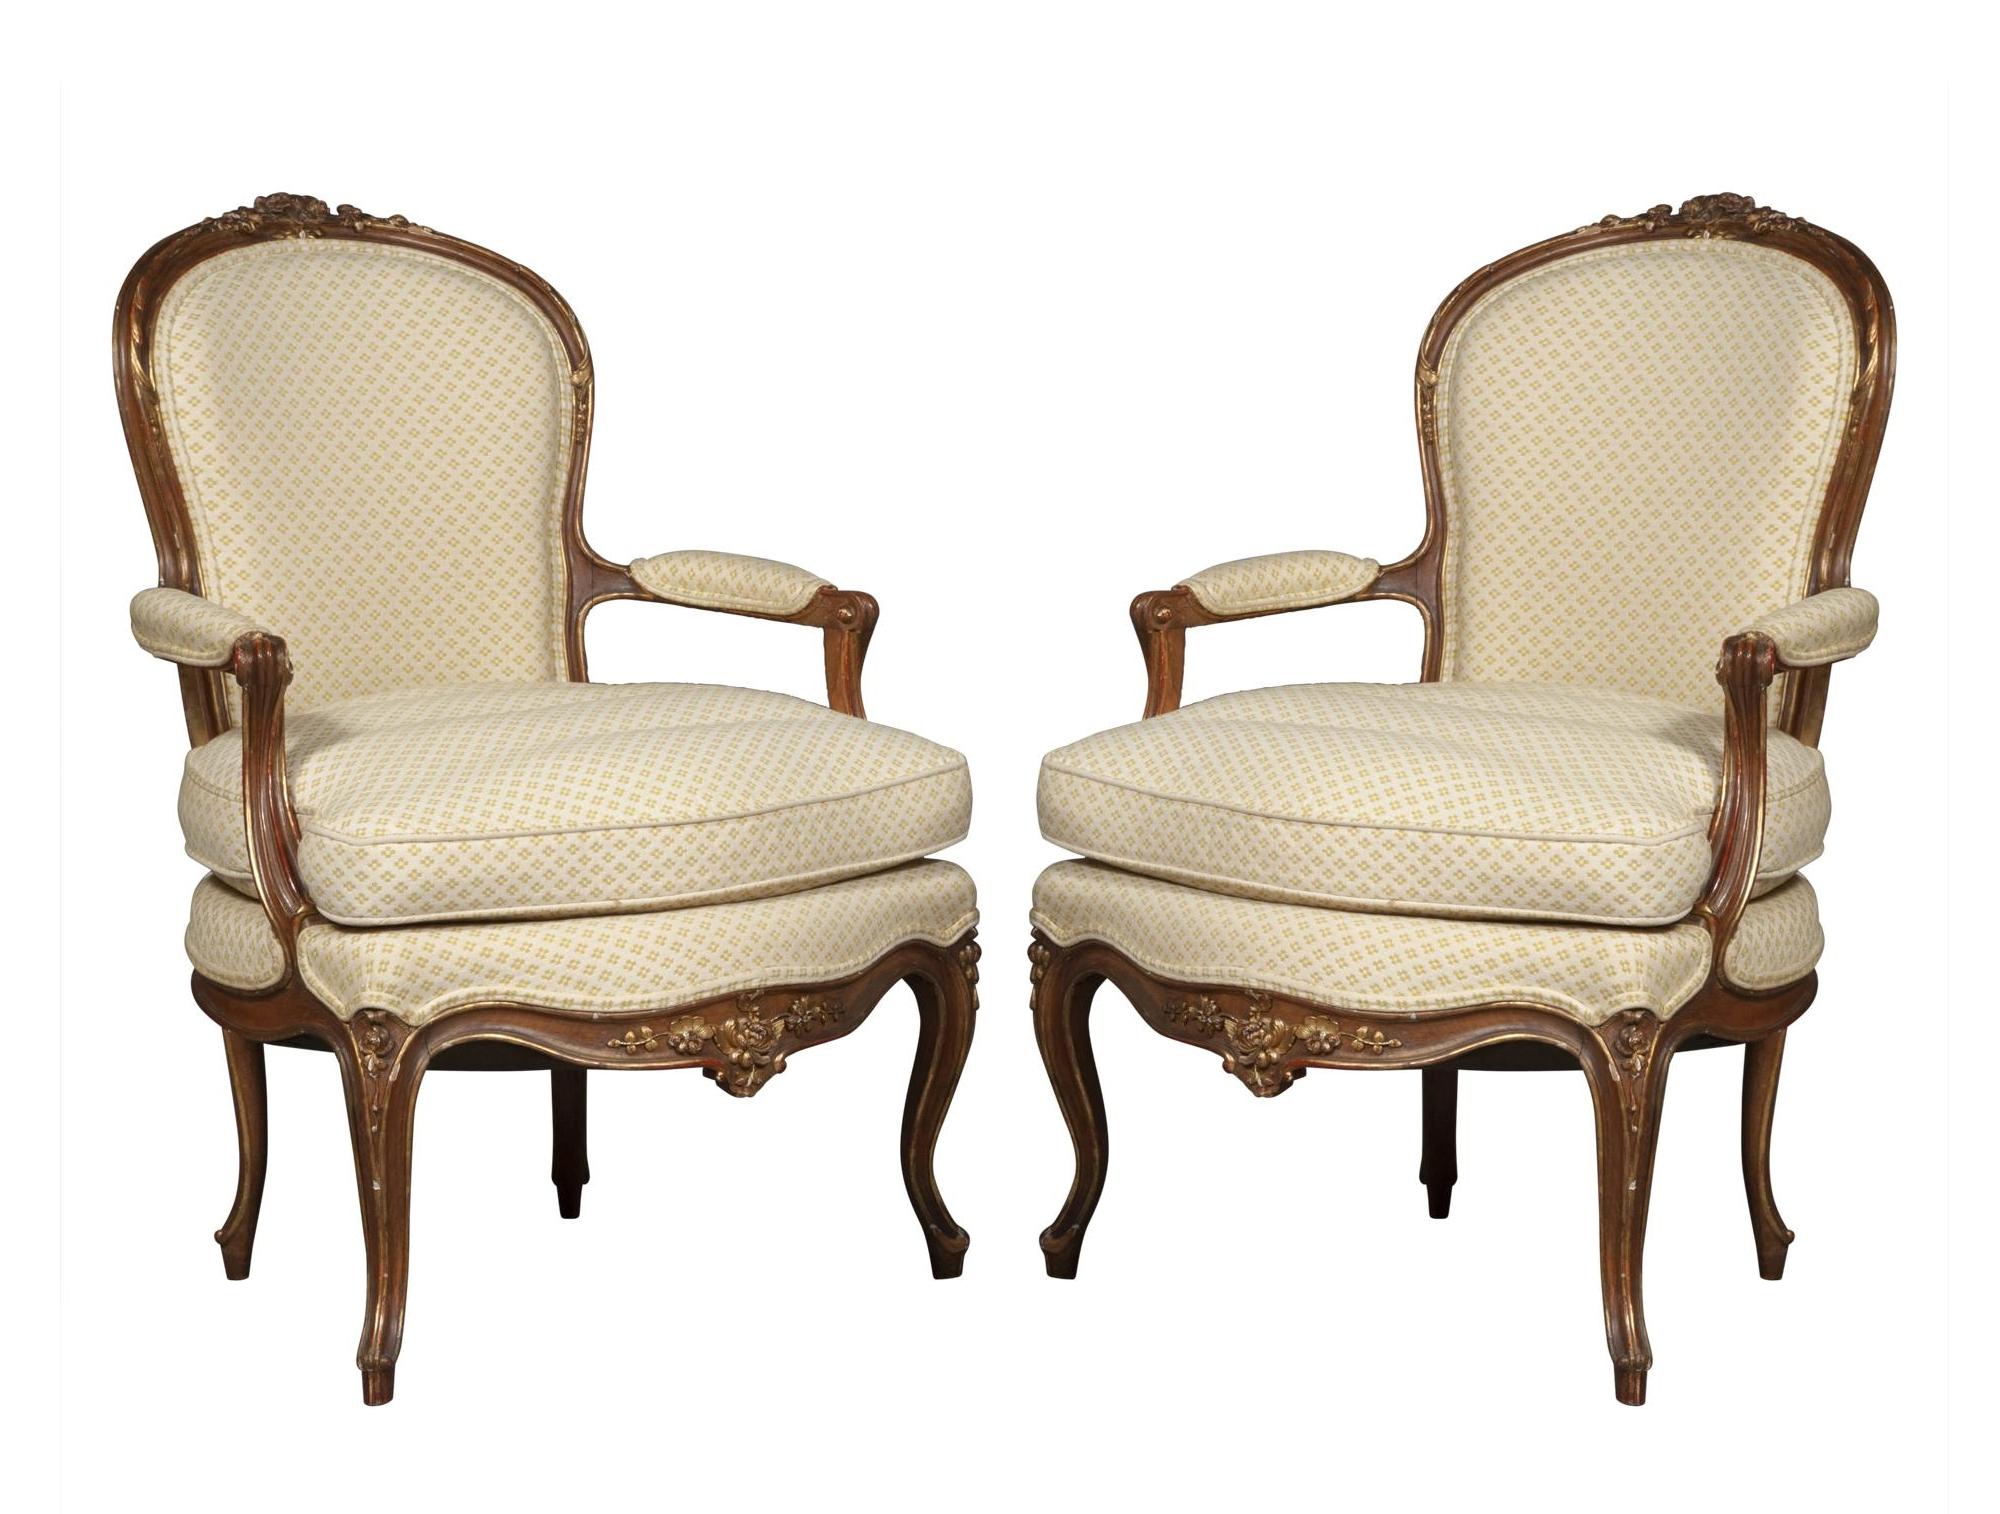 Plongez dans l'élégance intemporelle de nos exquis fauteuils bergères en noyer patiné Louis XV de la fin du XIXe siècle. Fabriquée avec une attention méticuleuse aux détails, chaque chaise est dotée d'un cadre orné de décorations dorées